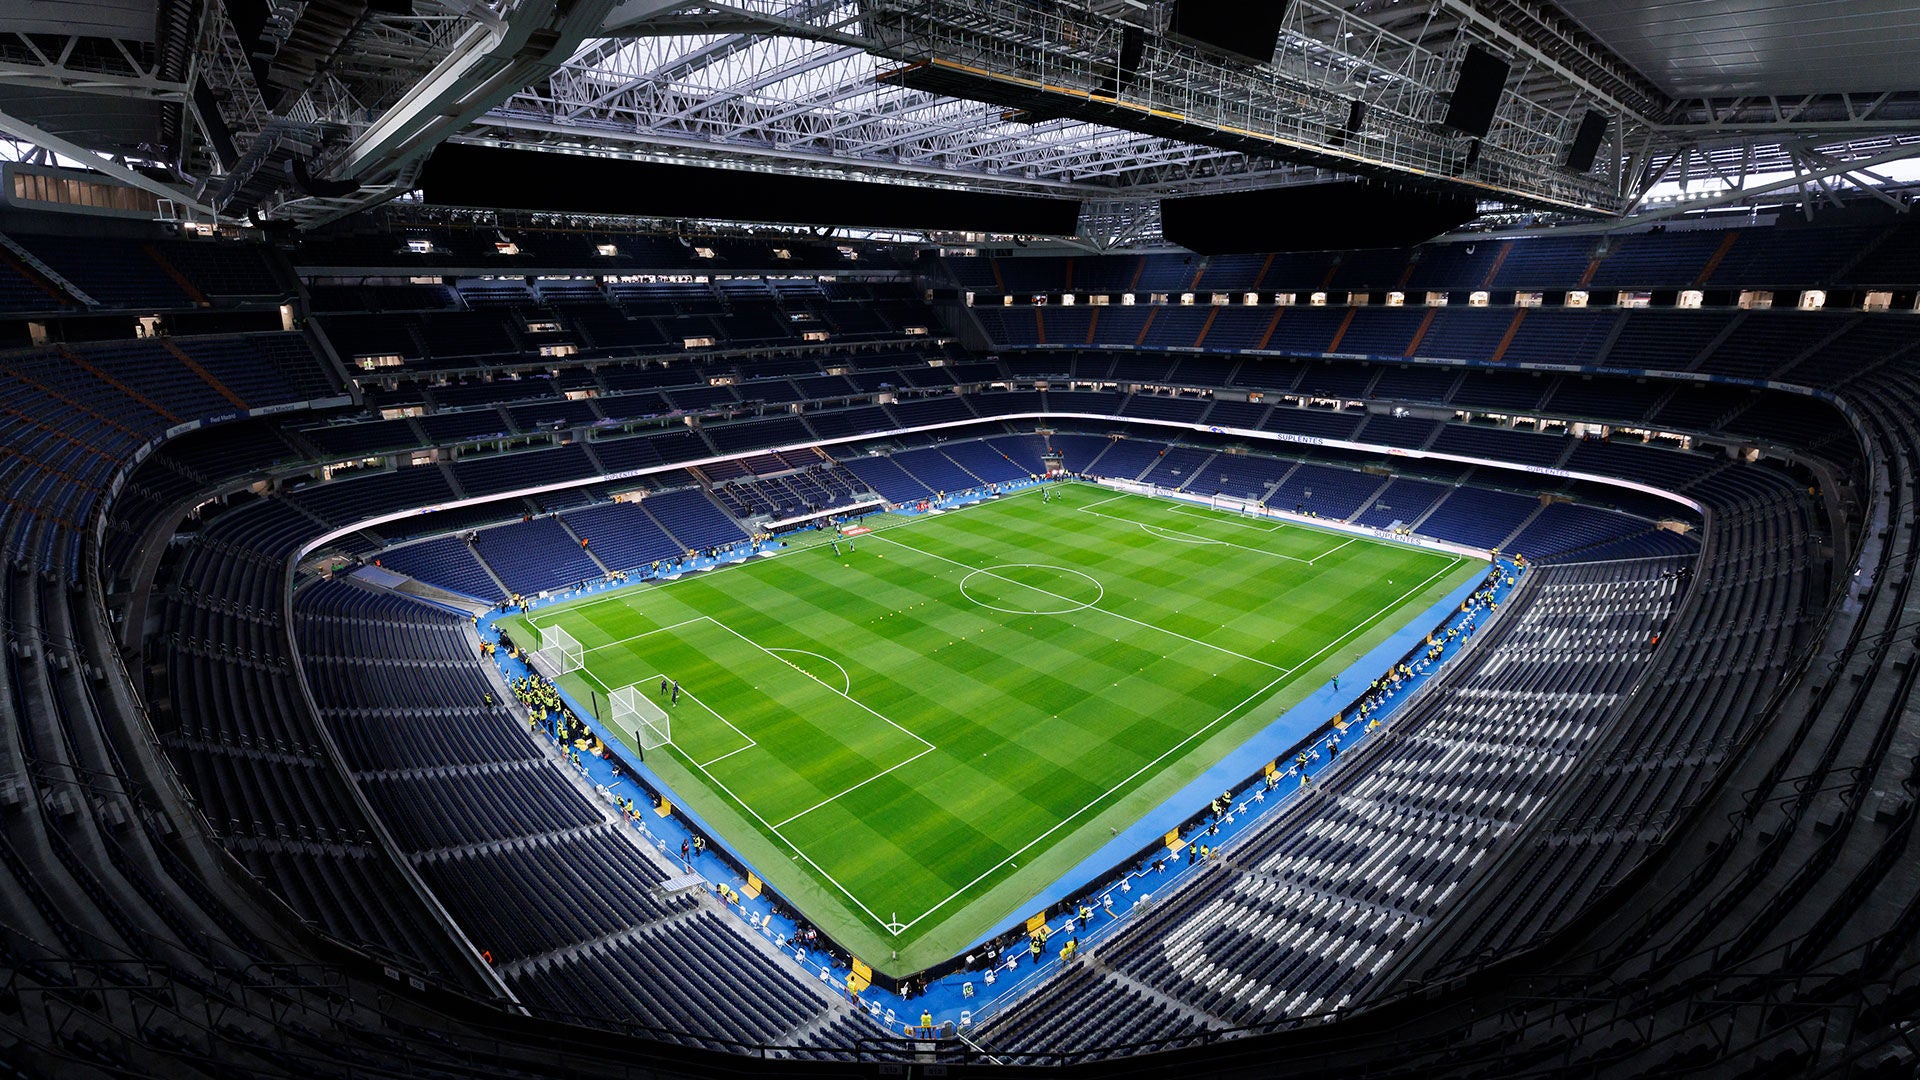 El Real Madrid es el club de fútbol con mayores ingresos del mundo, según Deloitte